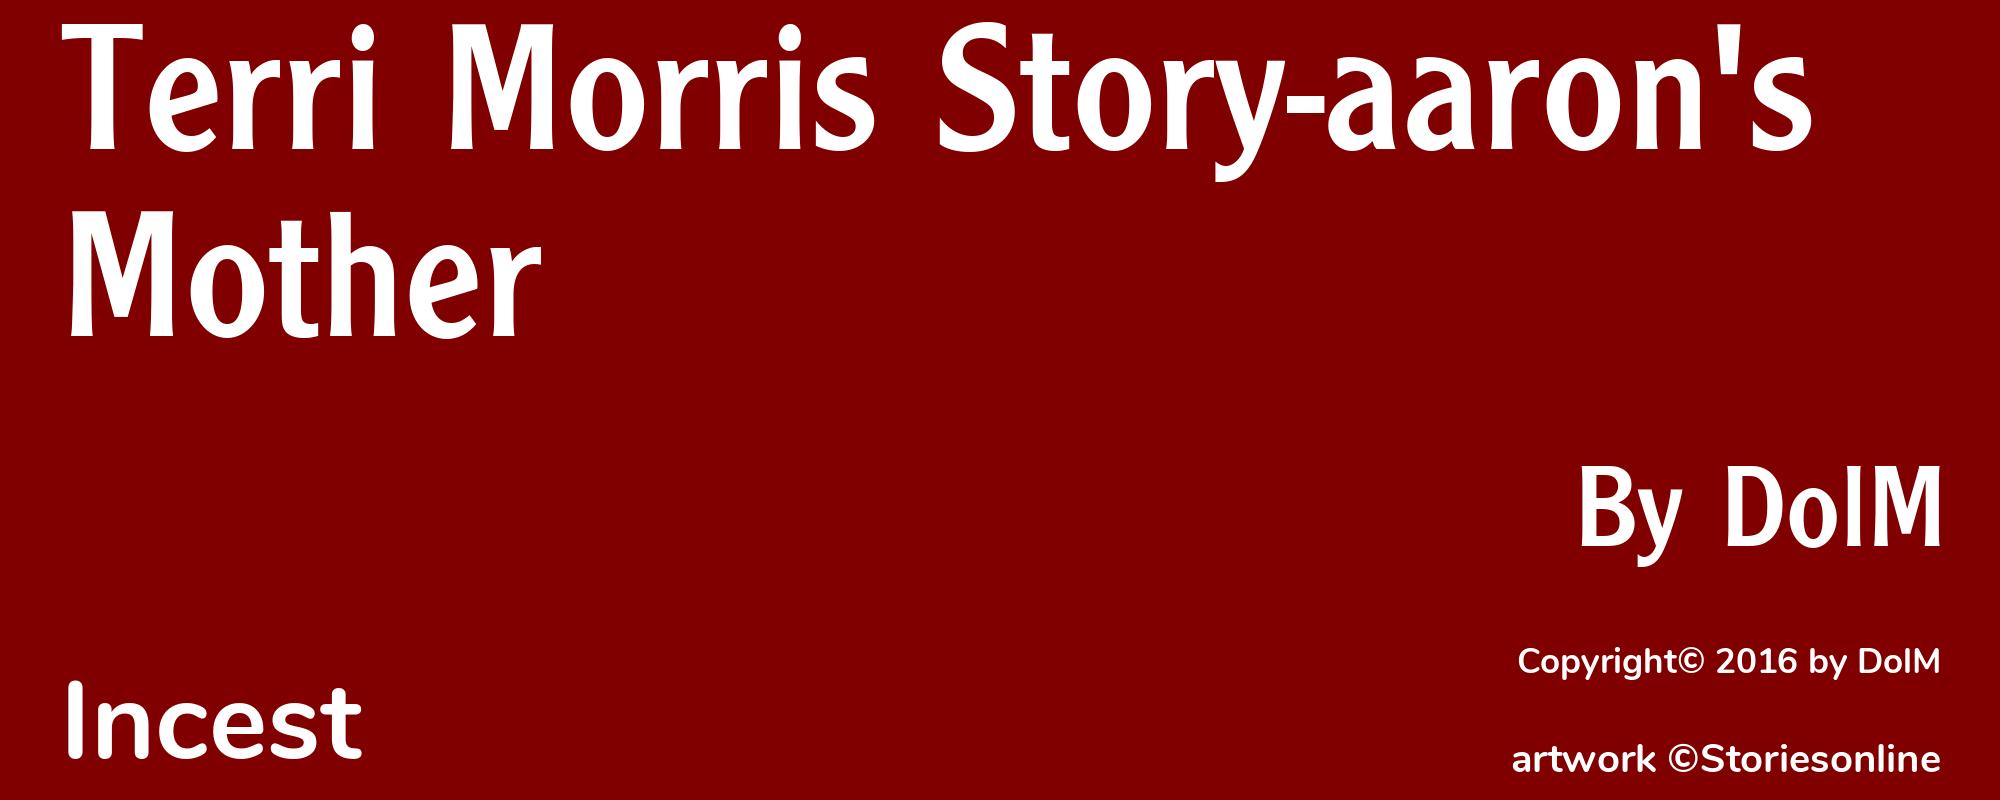 Terri Morris Story-aaron's Mother - Cover